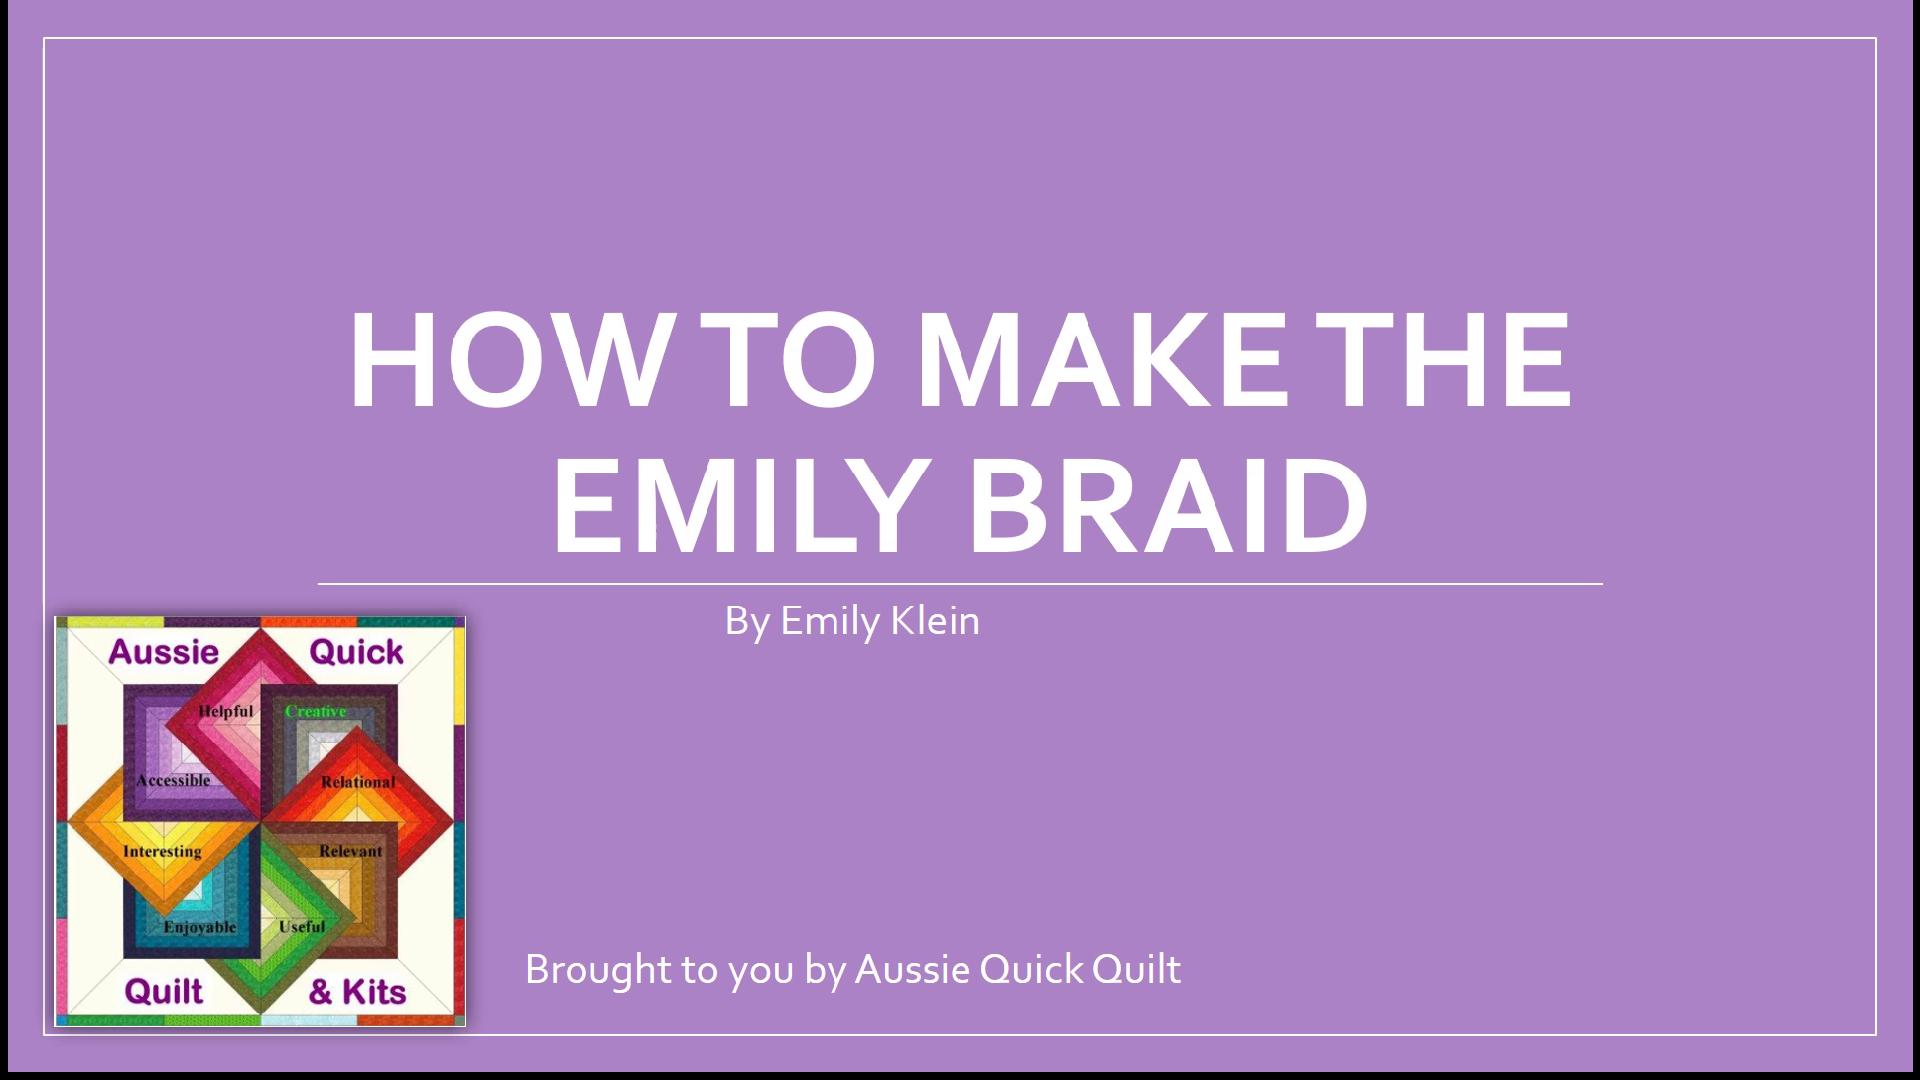 How to make the em braid